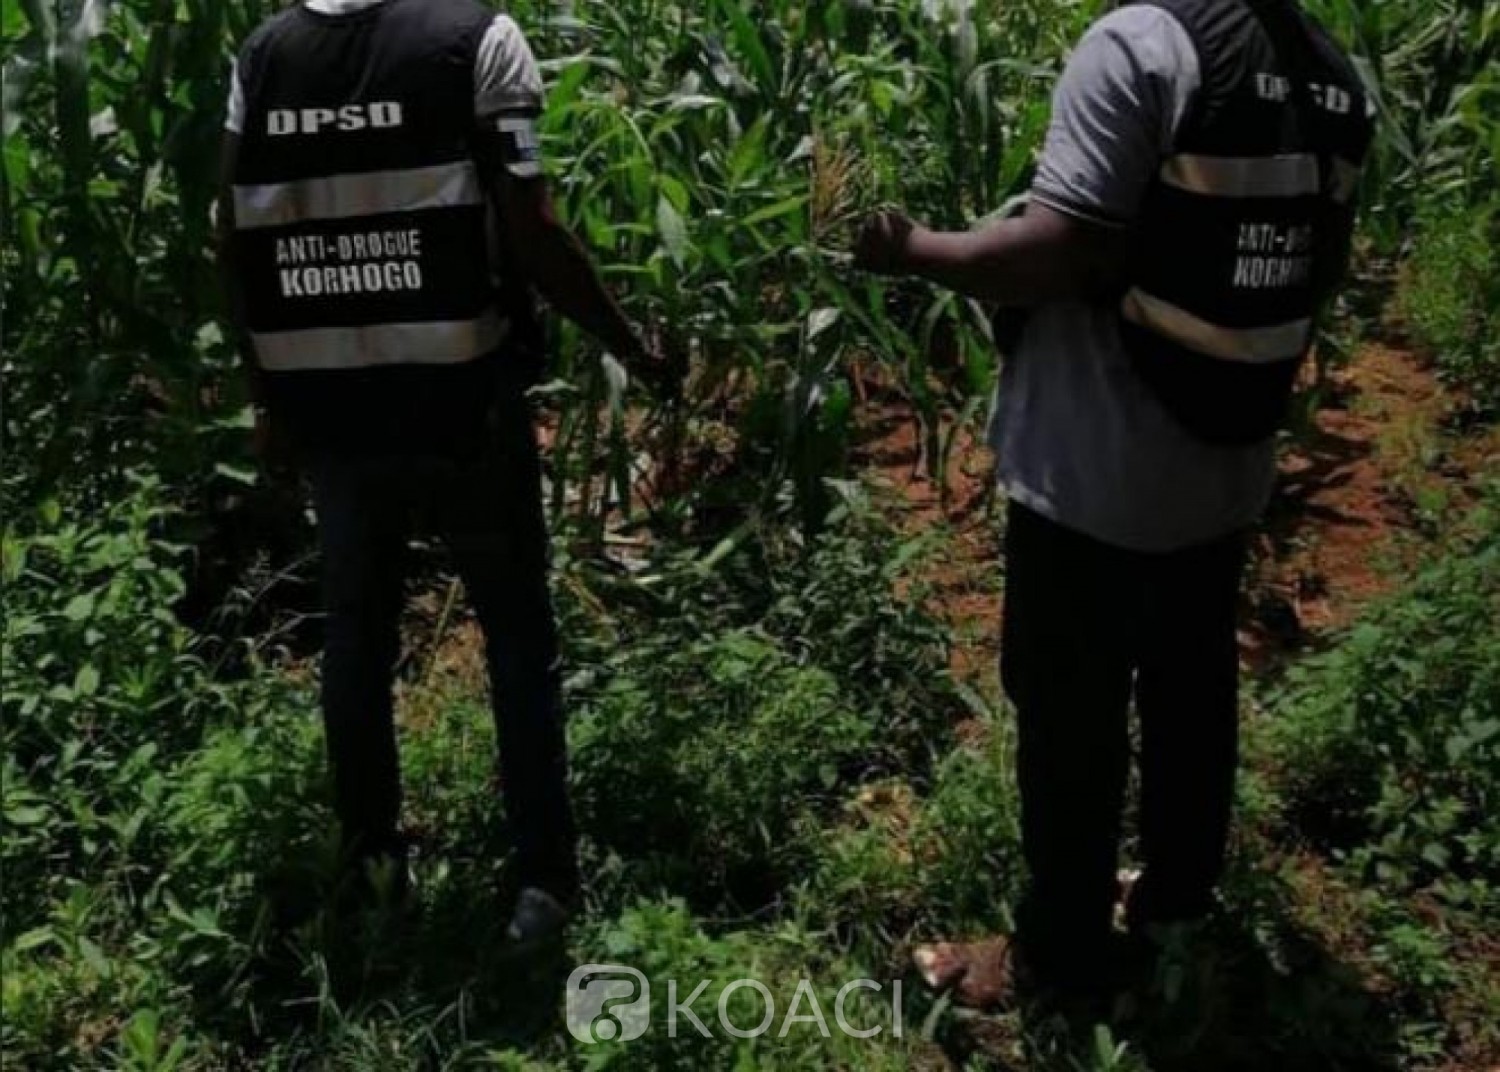 Côte d'Ivoire :    Affaires plants de cannabis découverts dans la prison de Korhogo, le procureur apporte un démenti